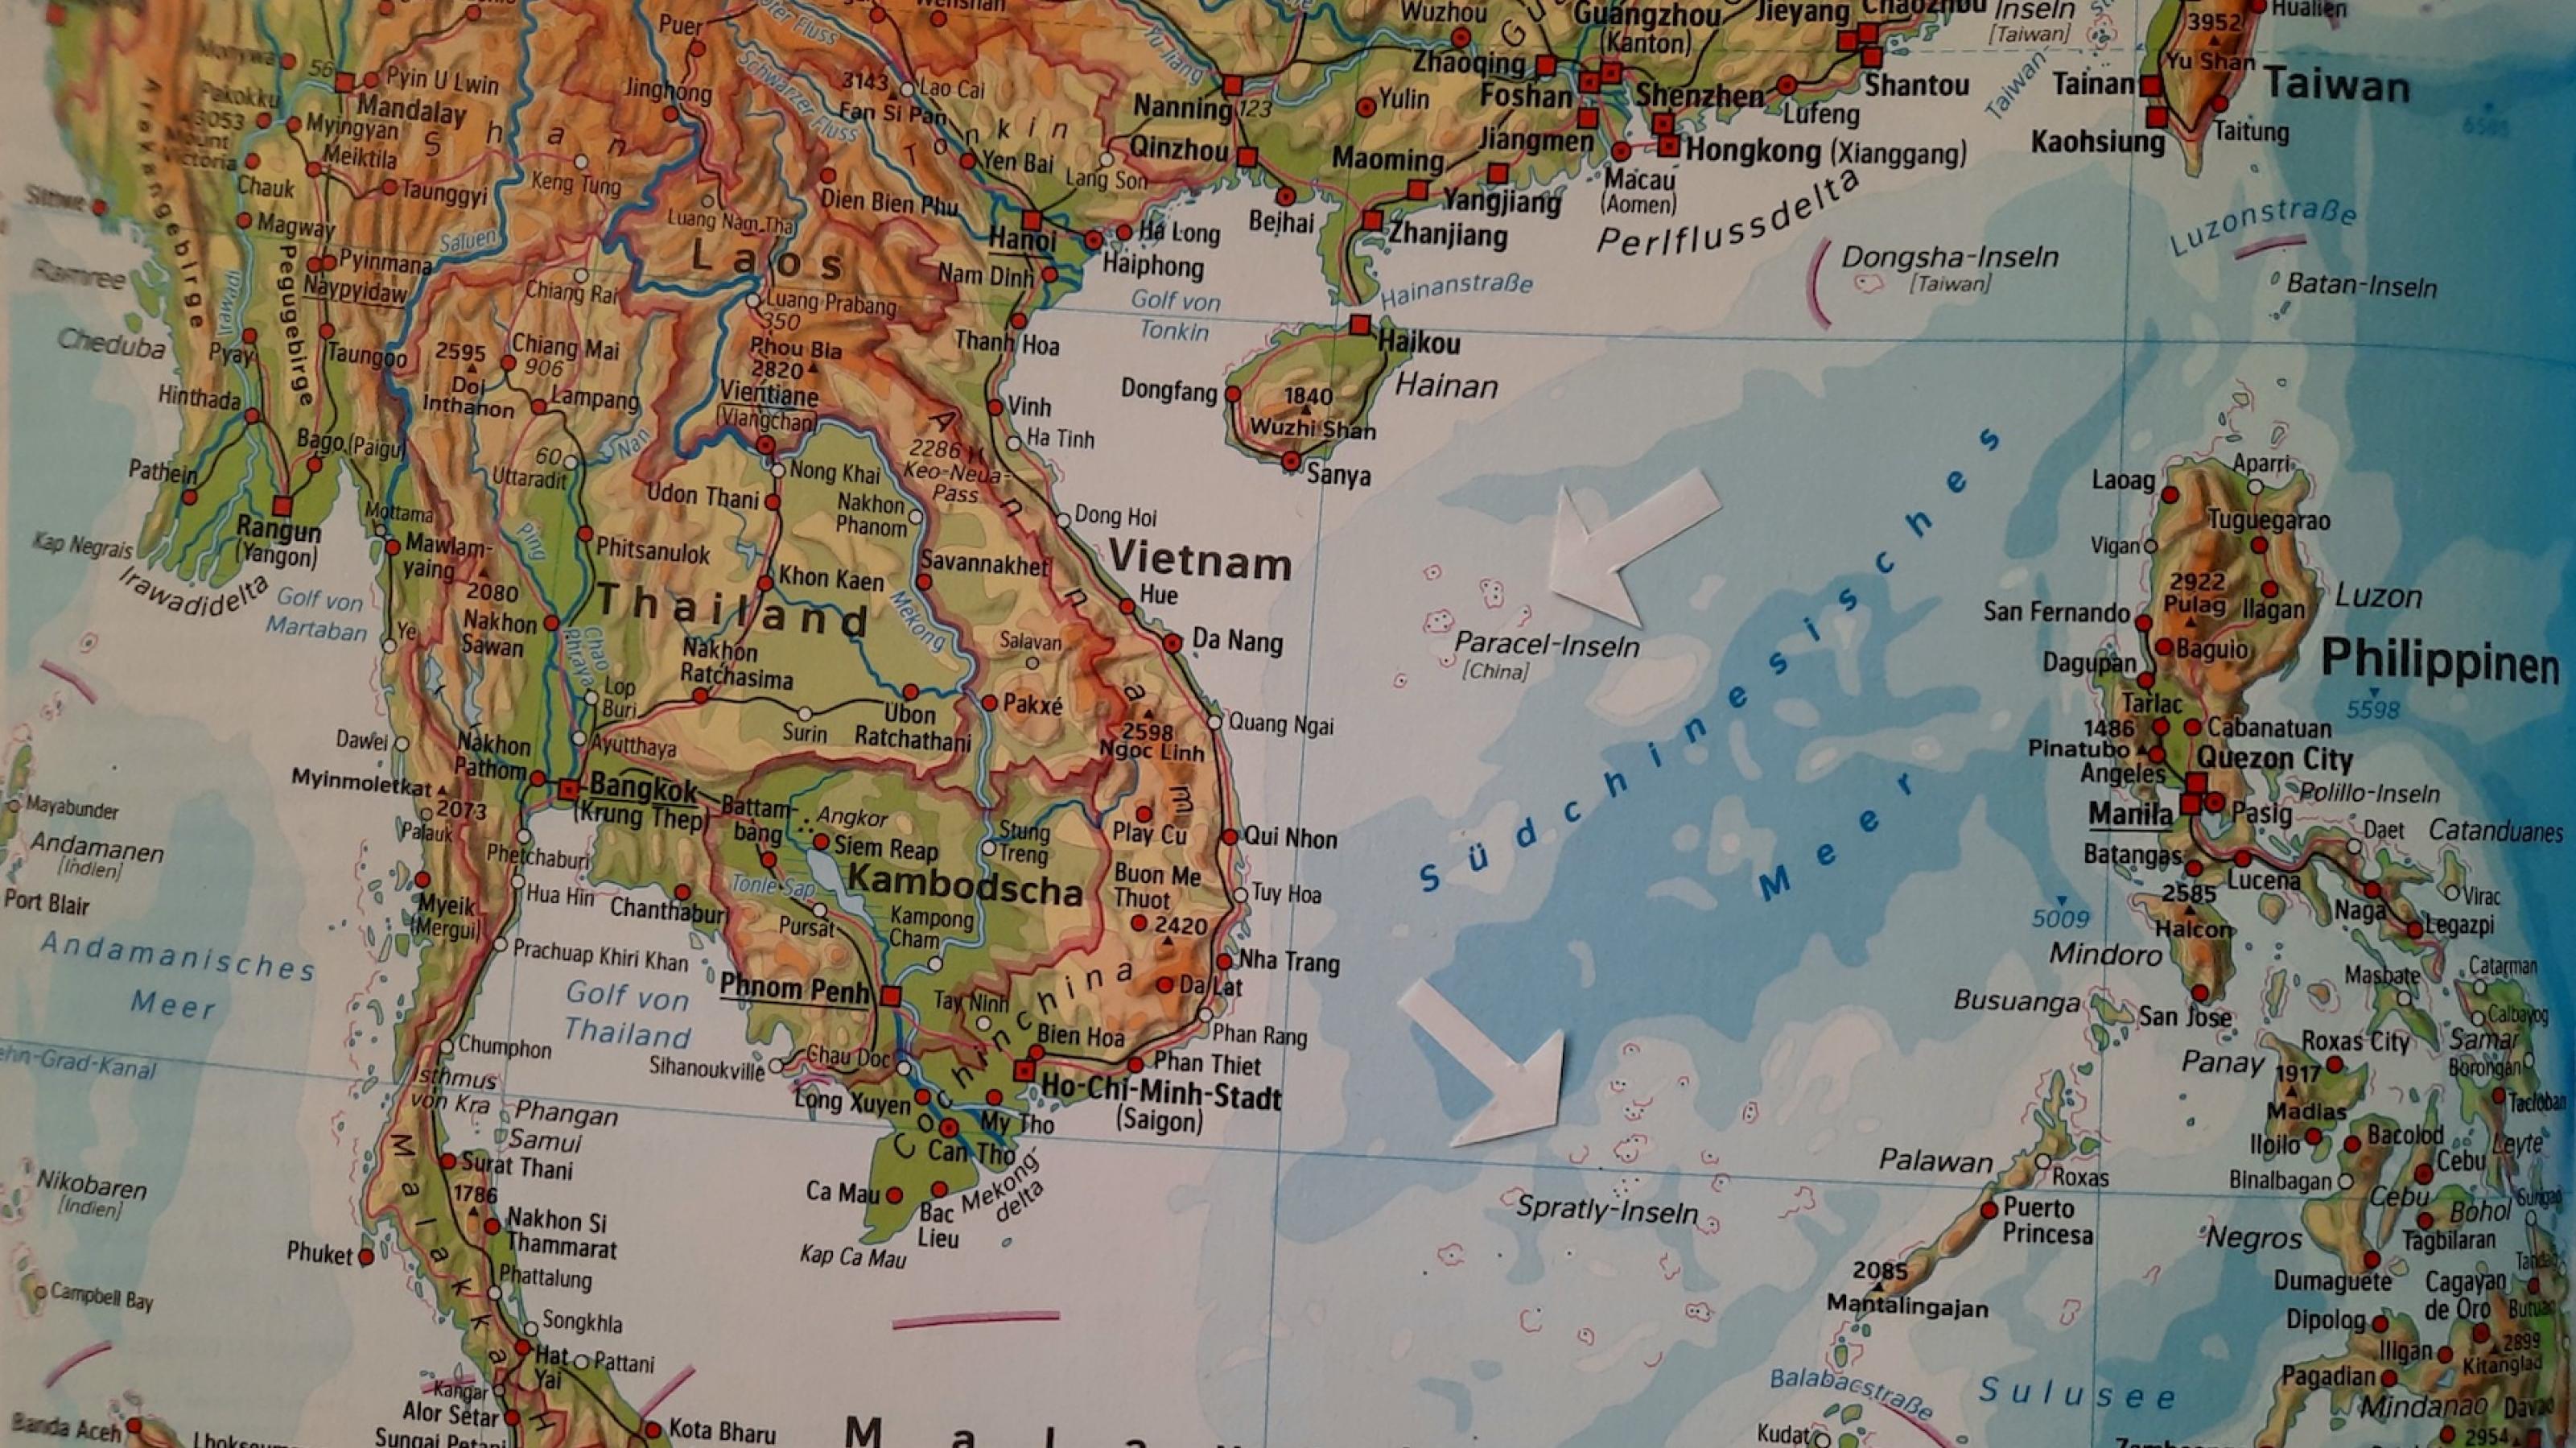 Karte des Südchinesischen Meeres mit Hinweispfeilen auf die Paracel-Inseln und die Spratley-Inseln